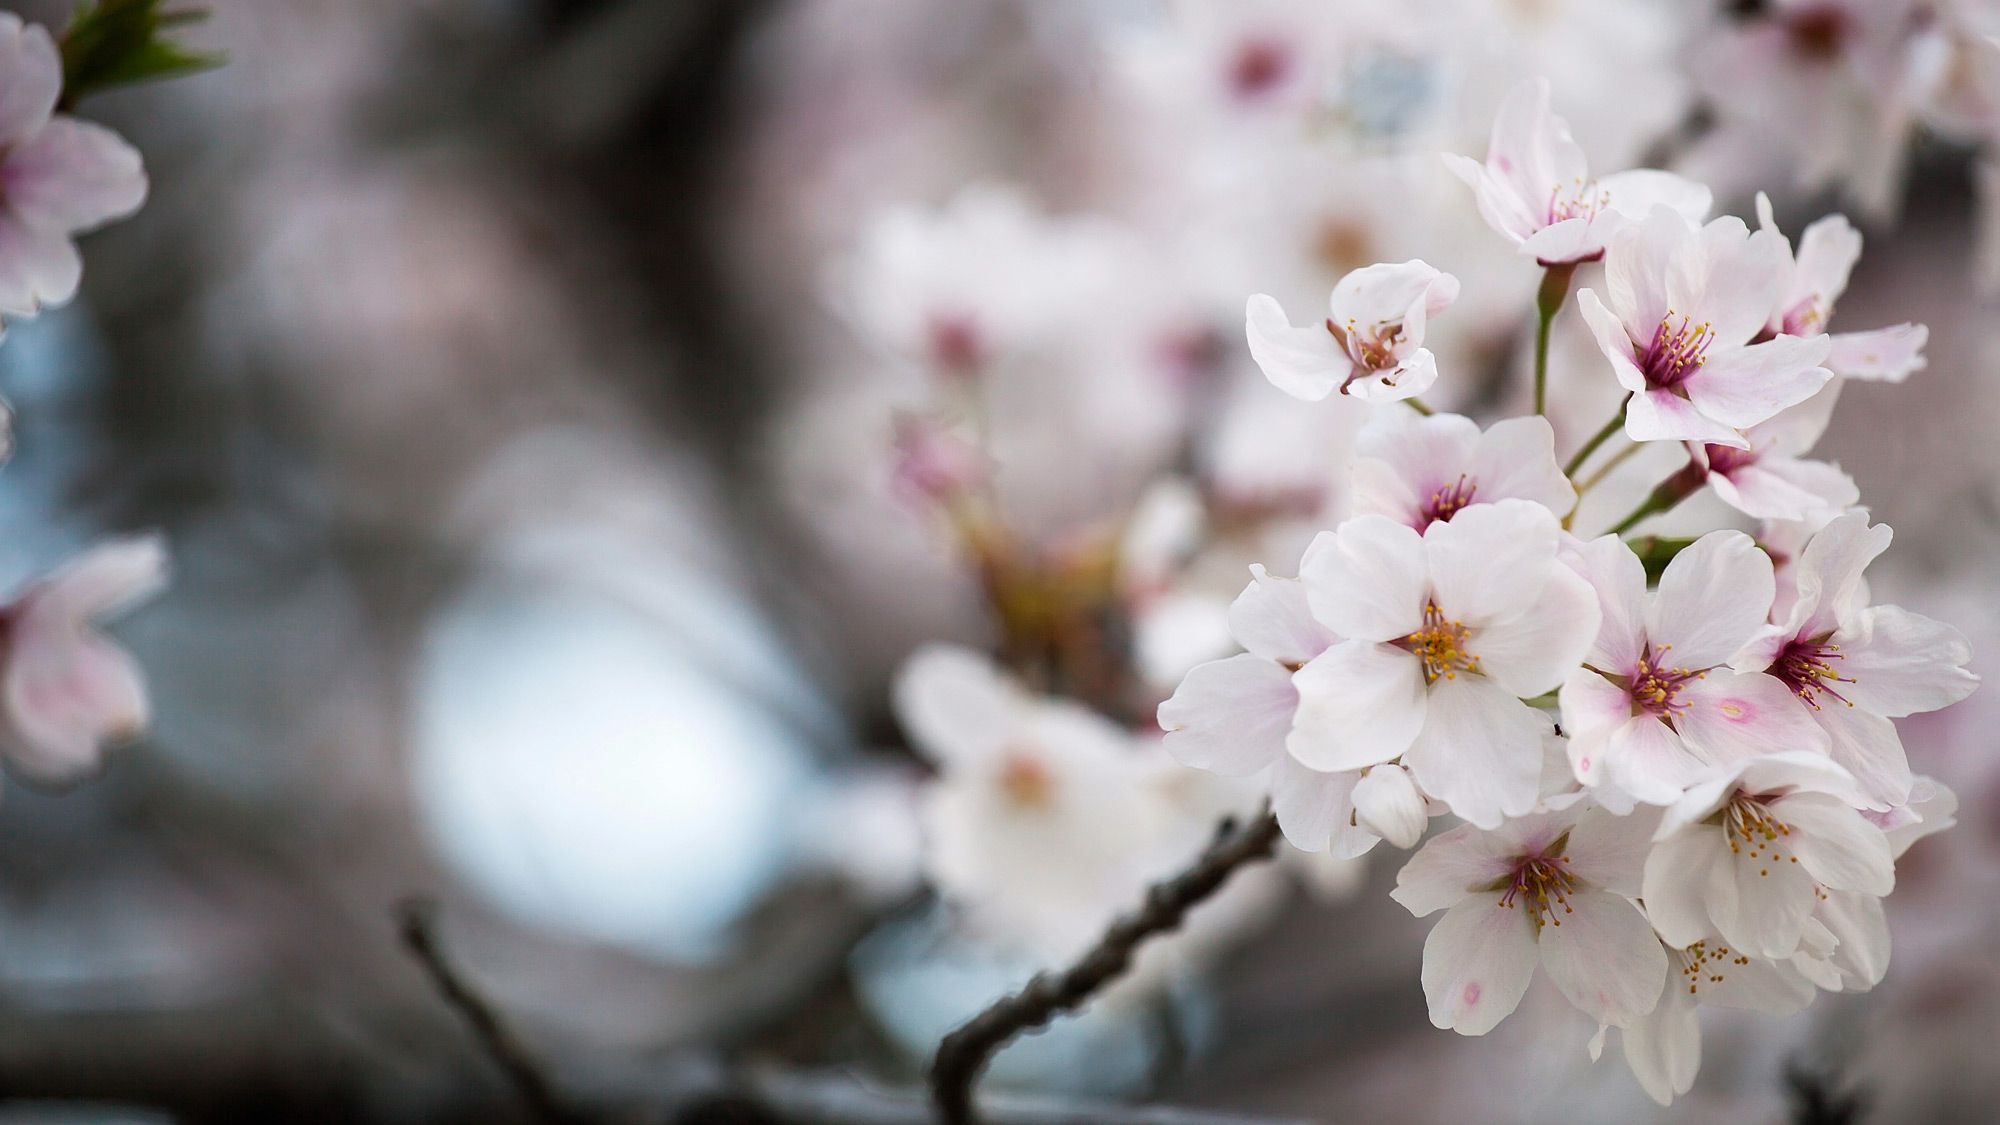 Hörspiel in Japan - Wie ein Kirschbaum sein